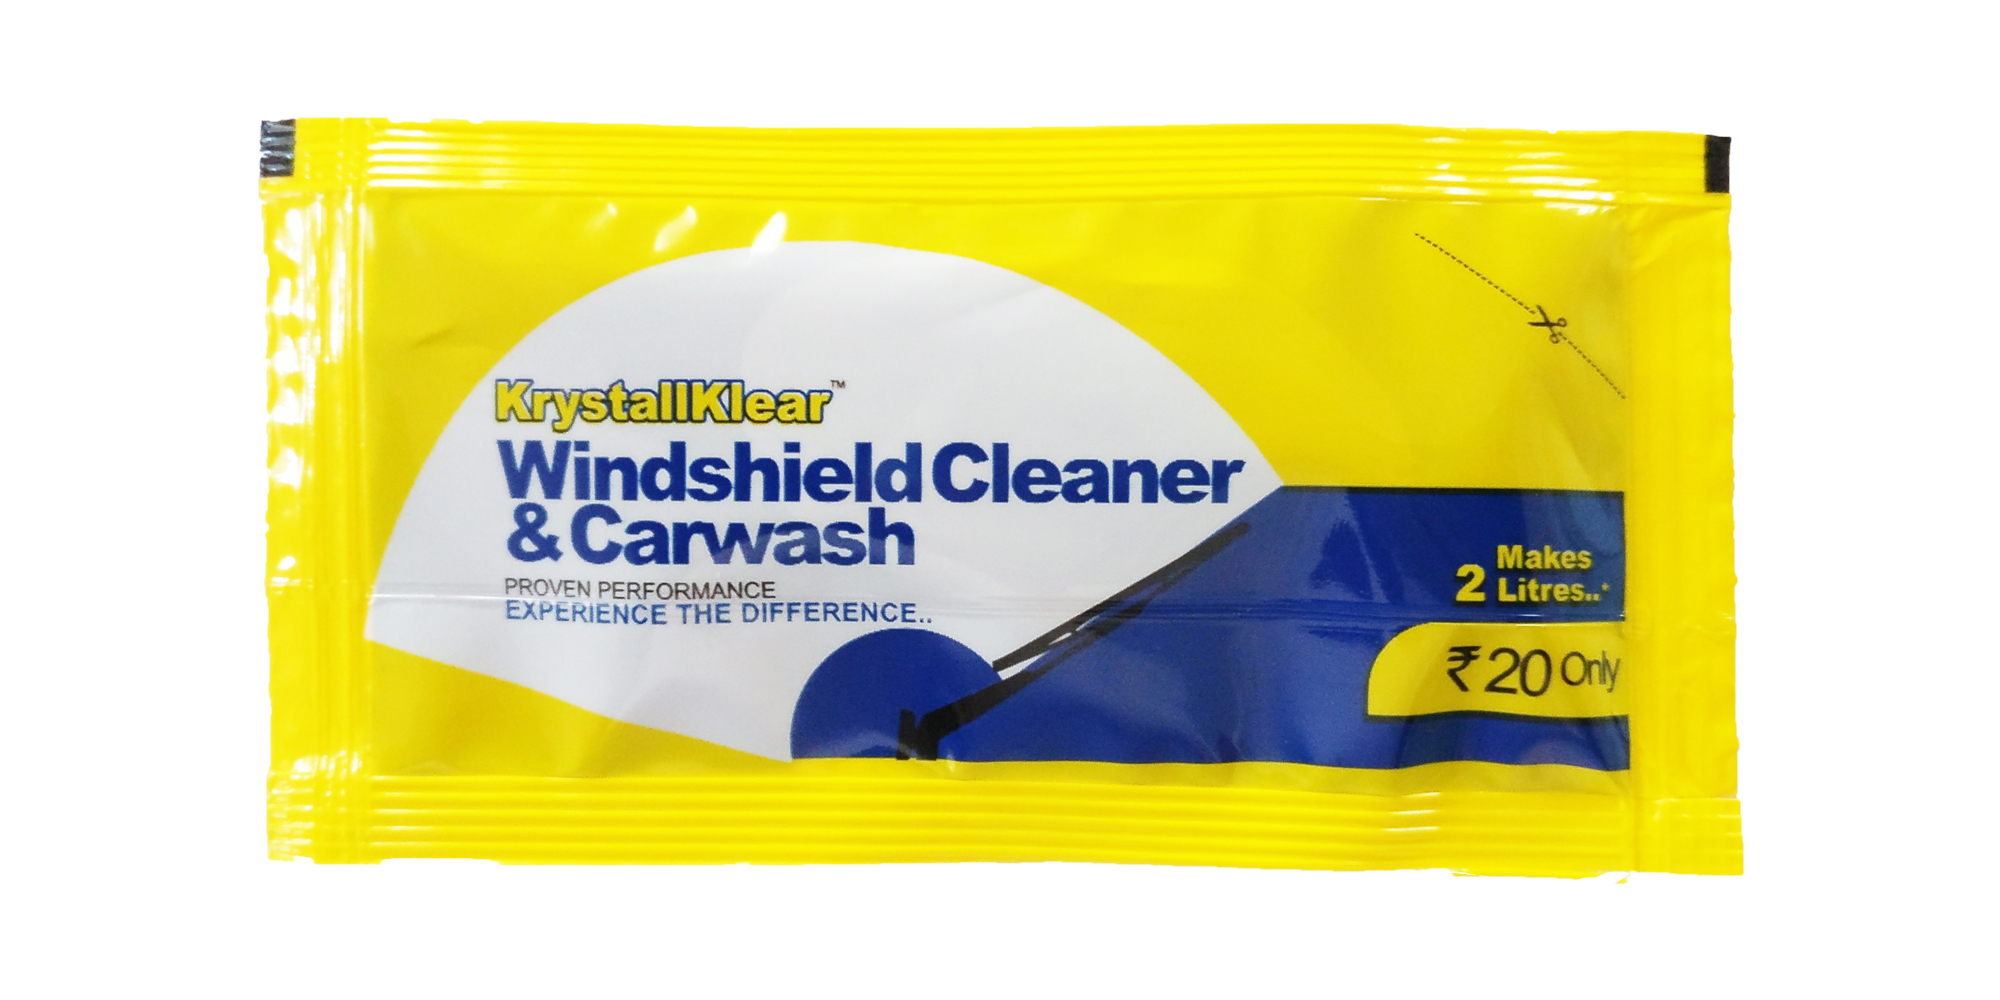 Windshield Cleaner & Carwash